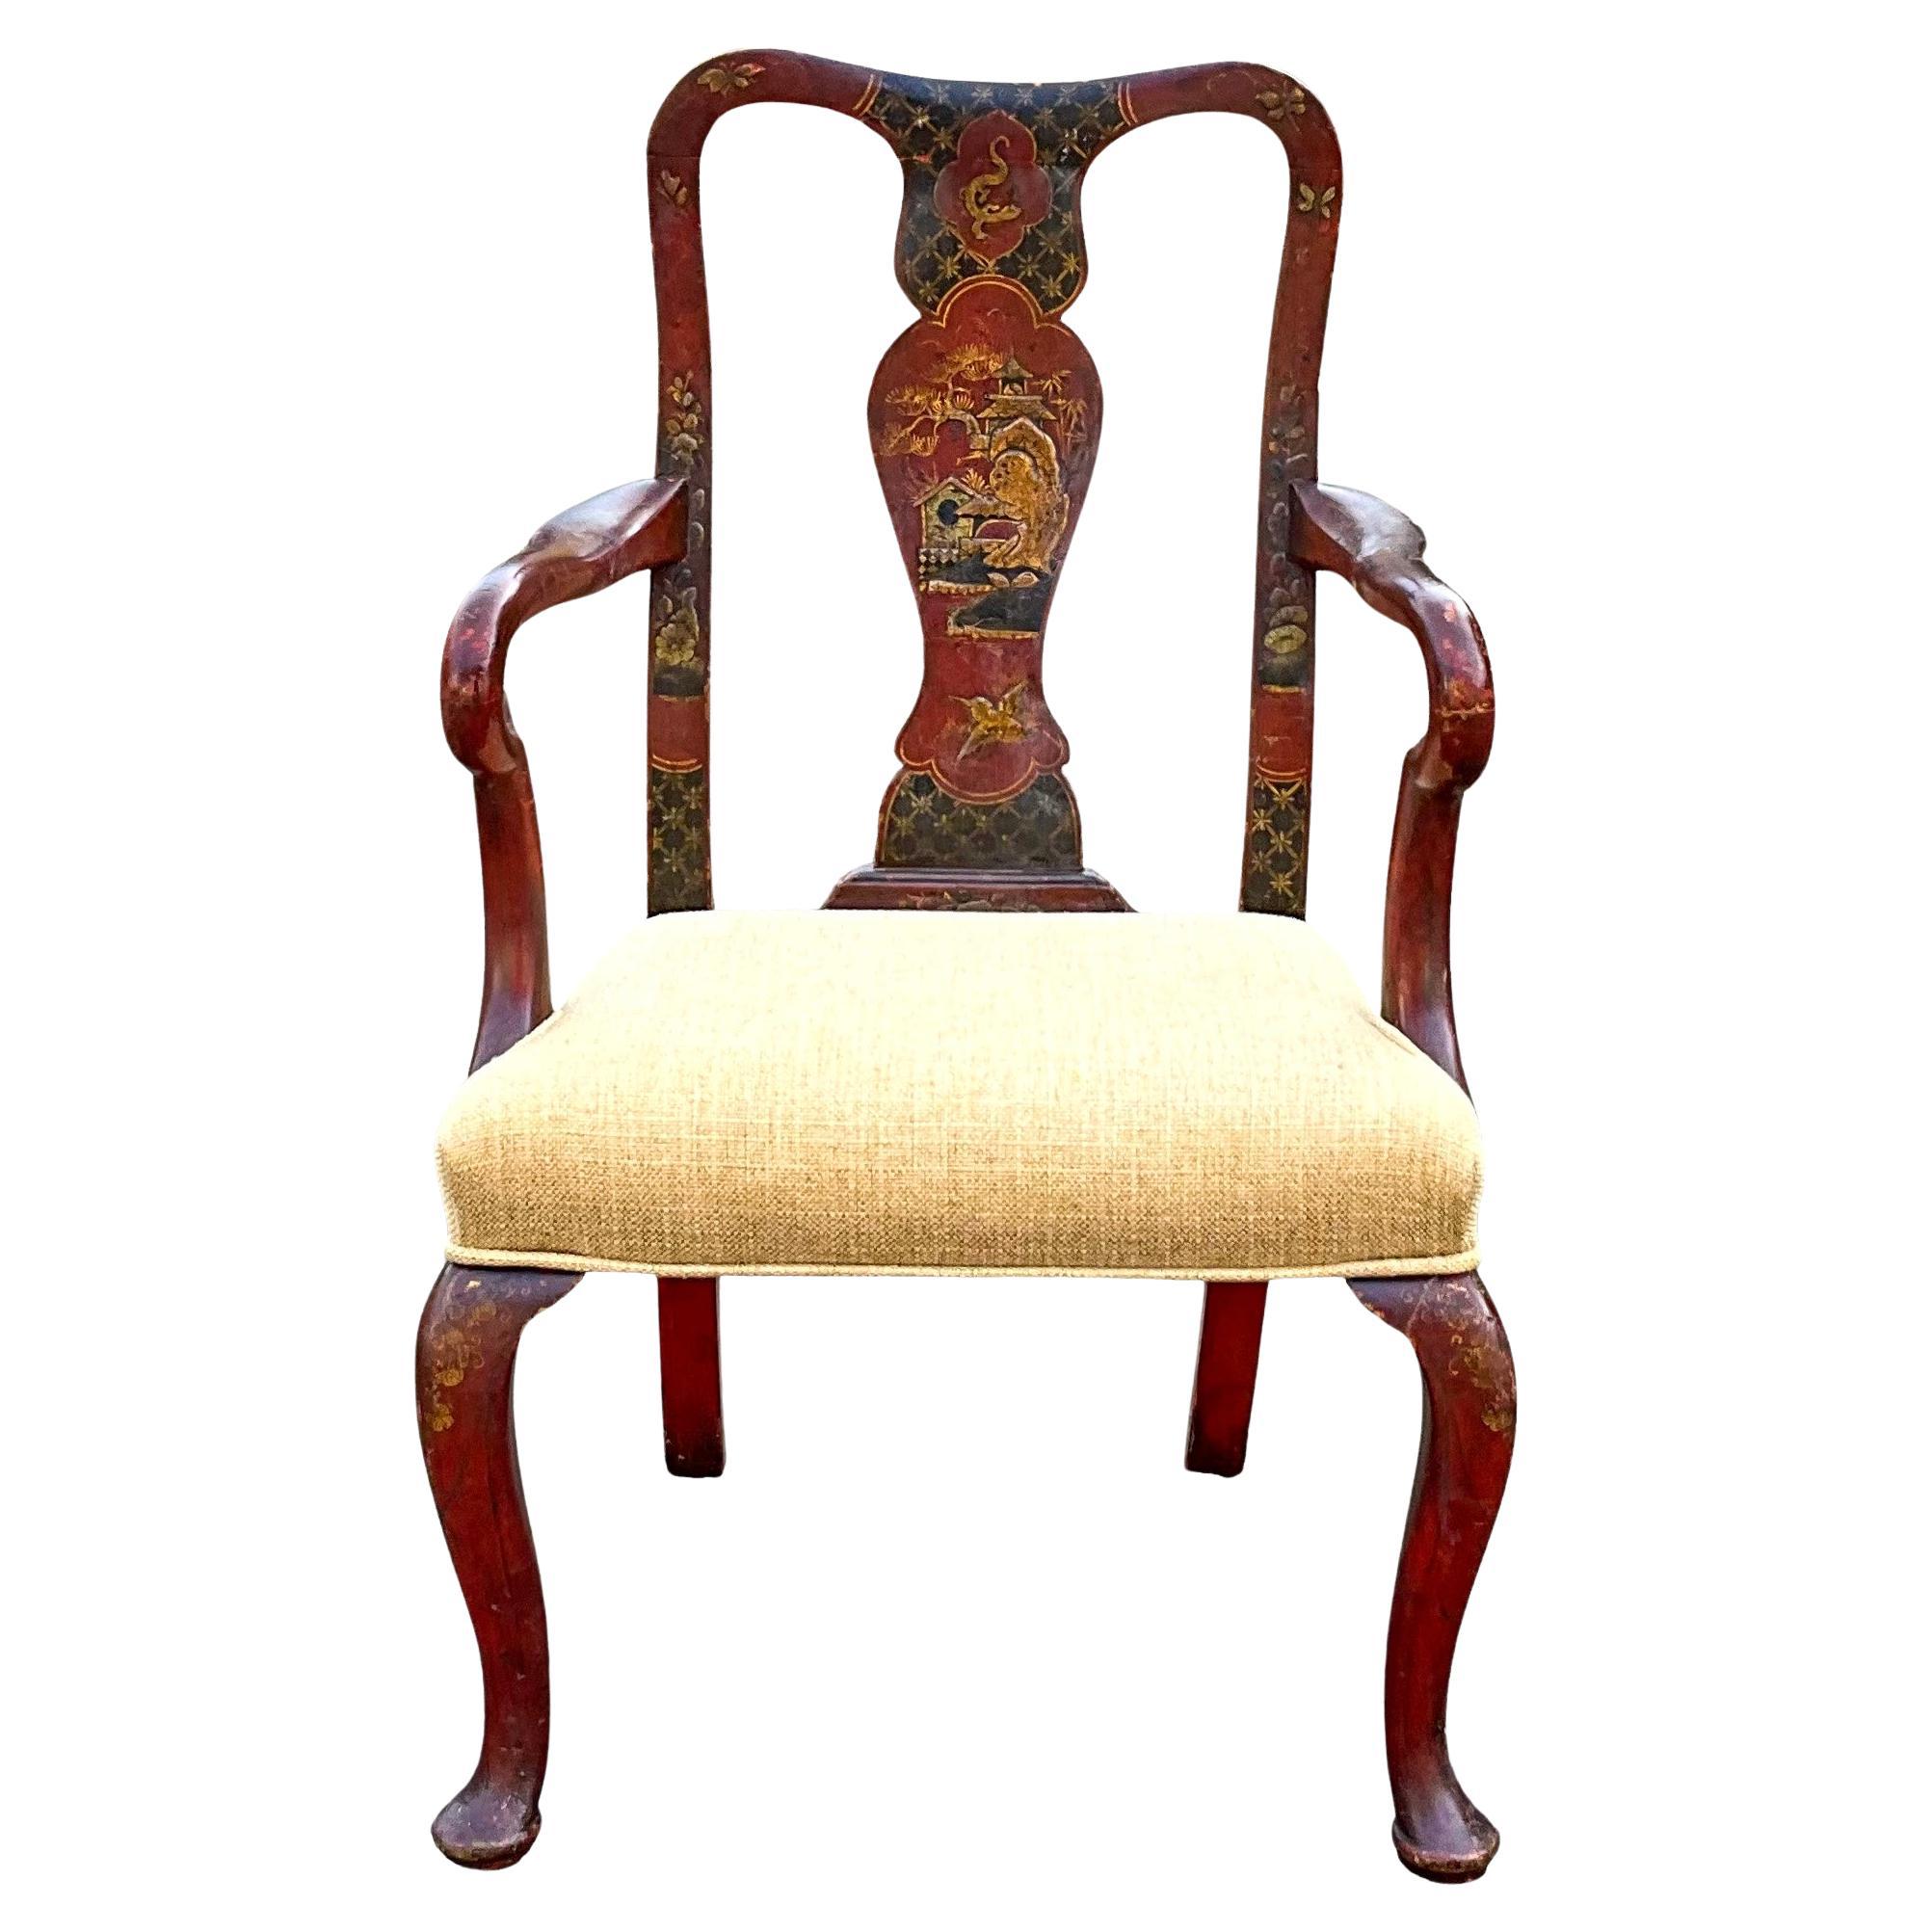 C'est merveilleux ! Il s'agit d'une chaise d'enfant en chinoiserie rouge de la fin du 19e siècle, récemment recouverte d'une toile de lin. Remarquez les détails exquis du dos et des bras !